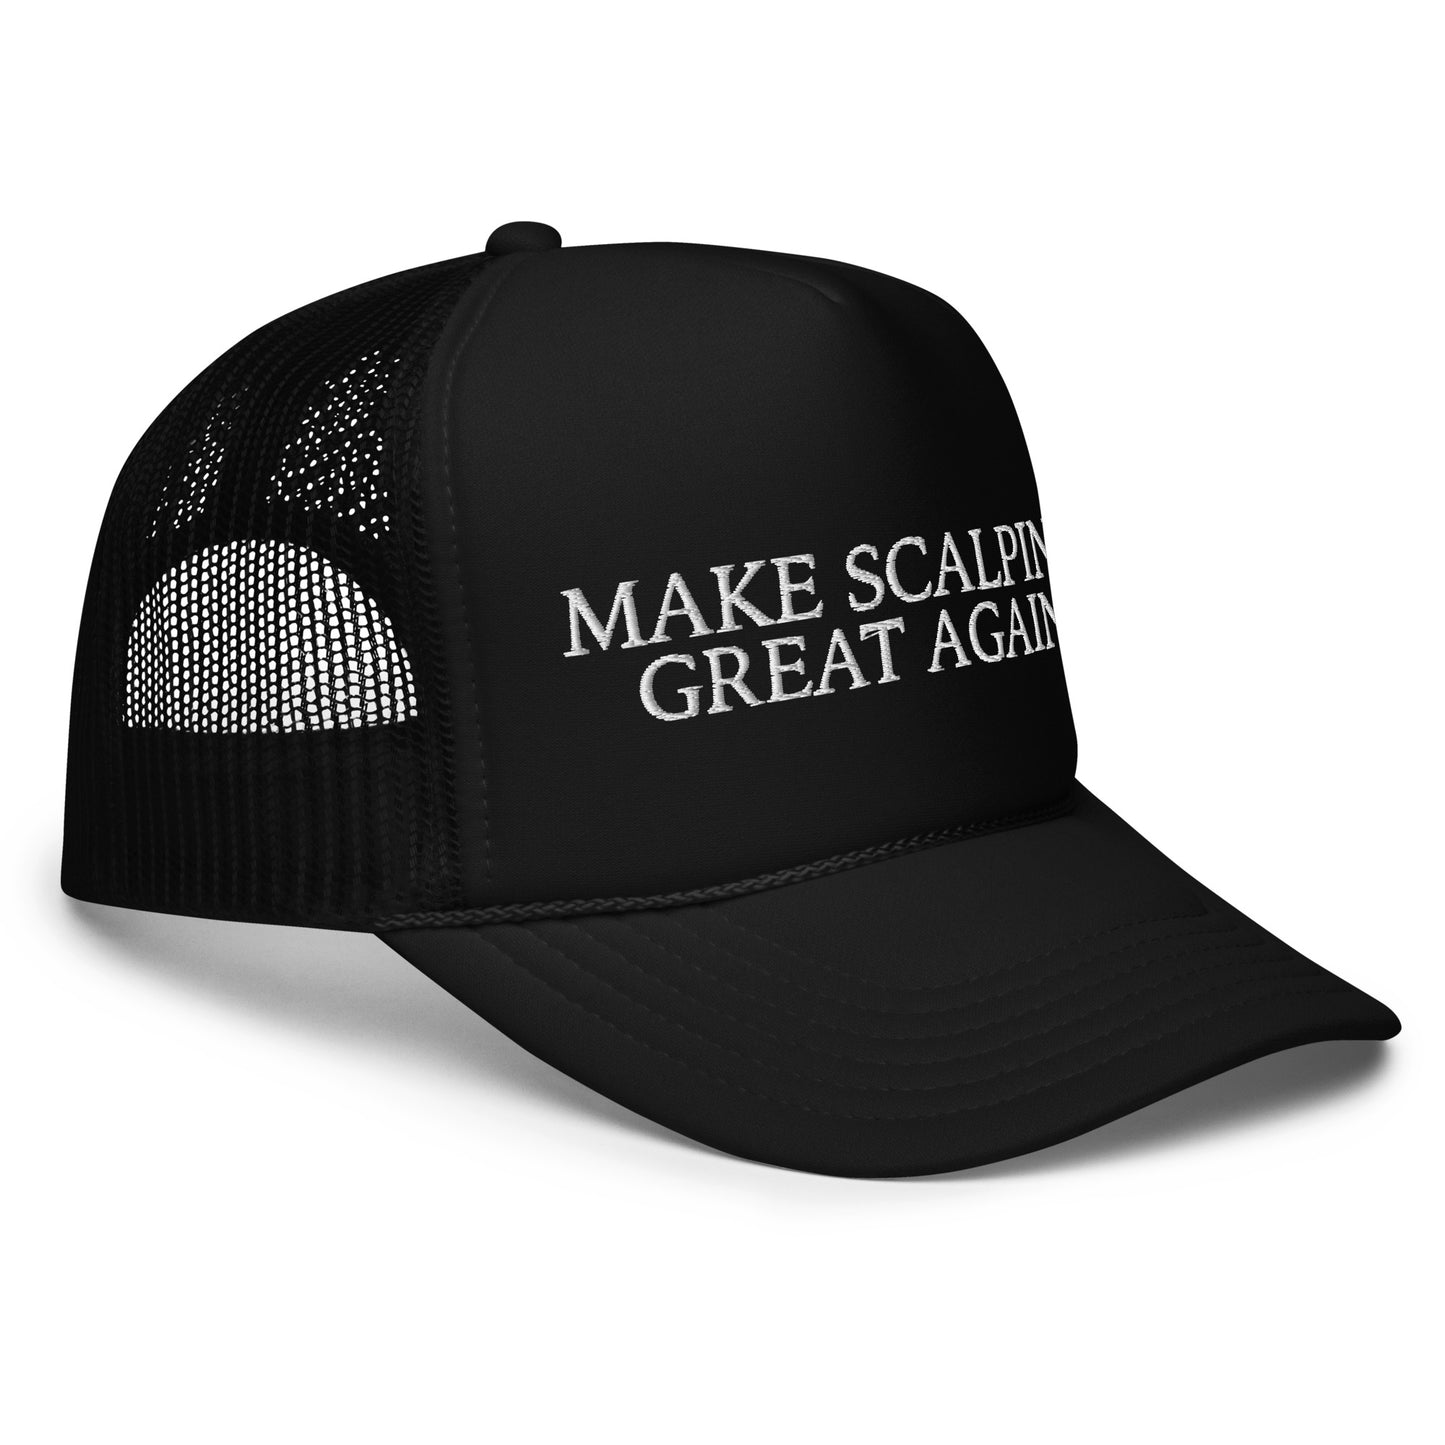 MAKE SCALPING GREAT AGAIN Foam trucker hat